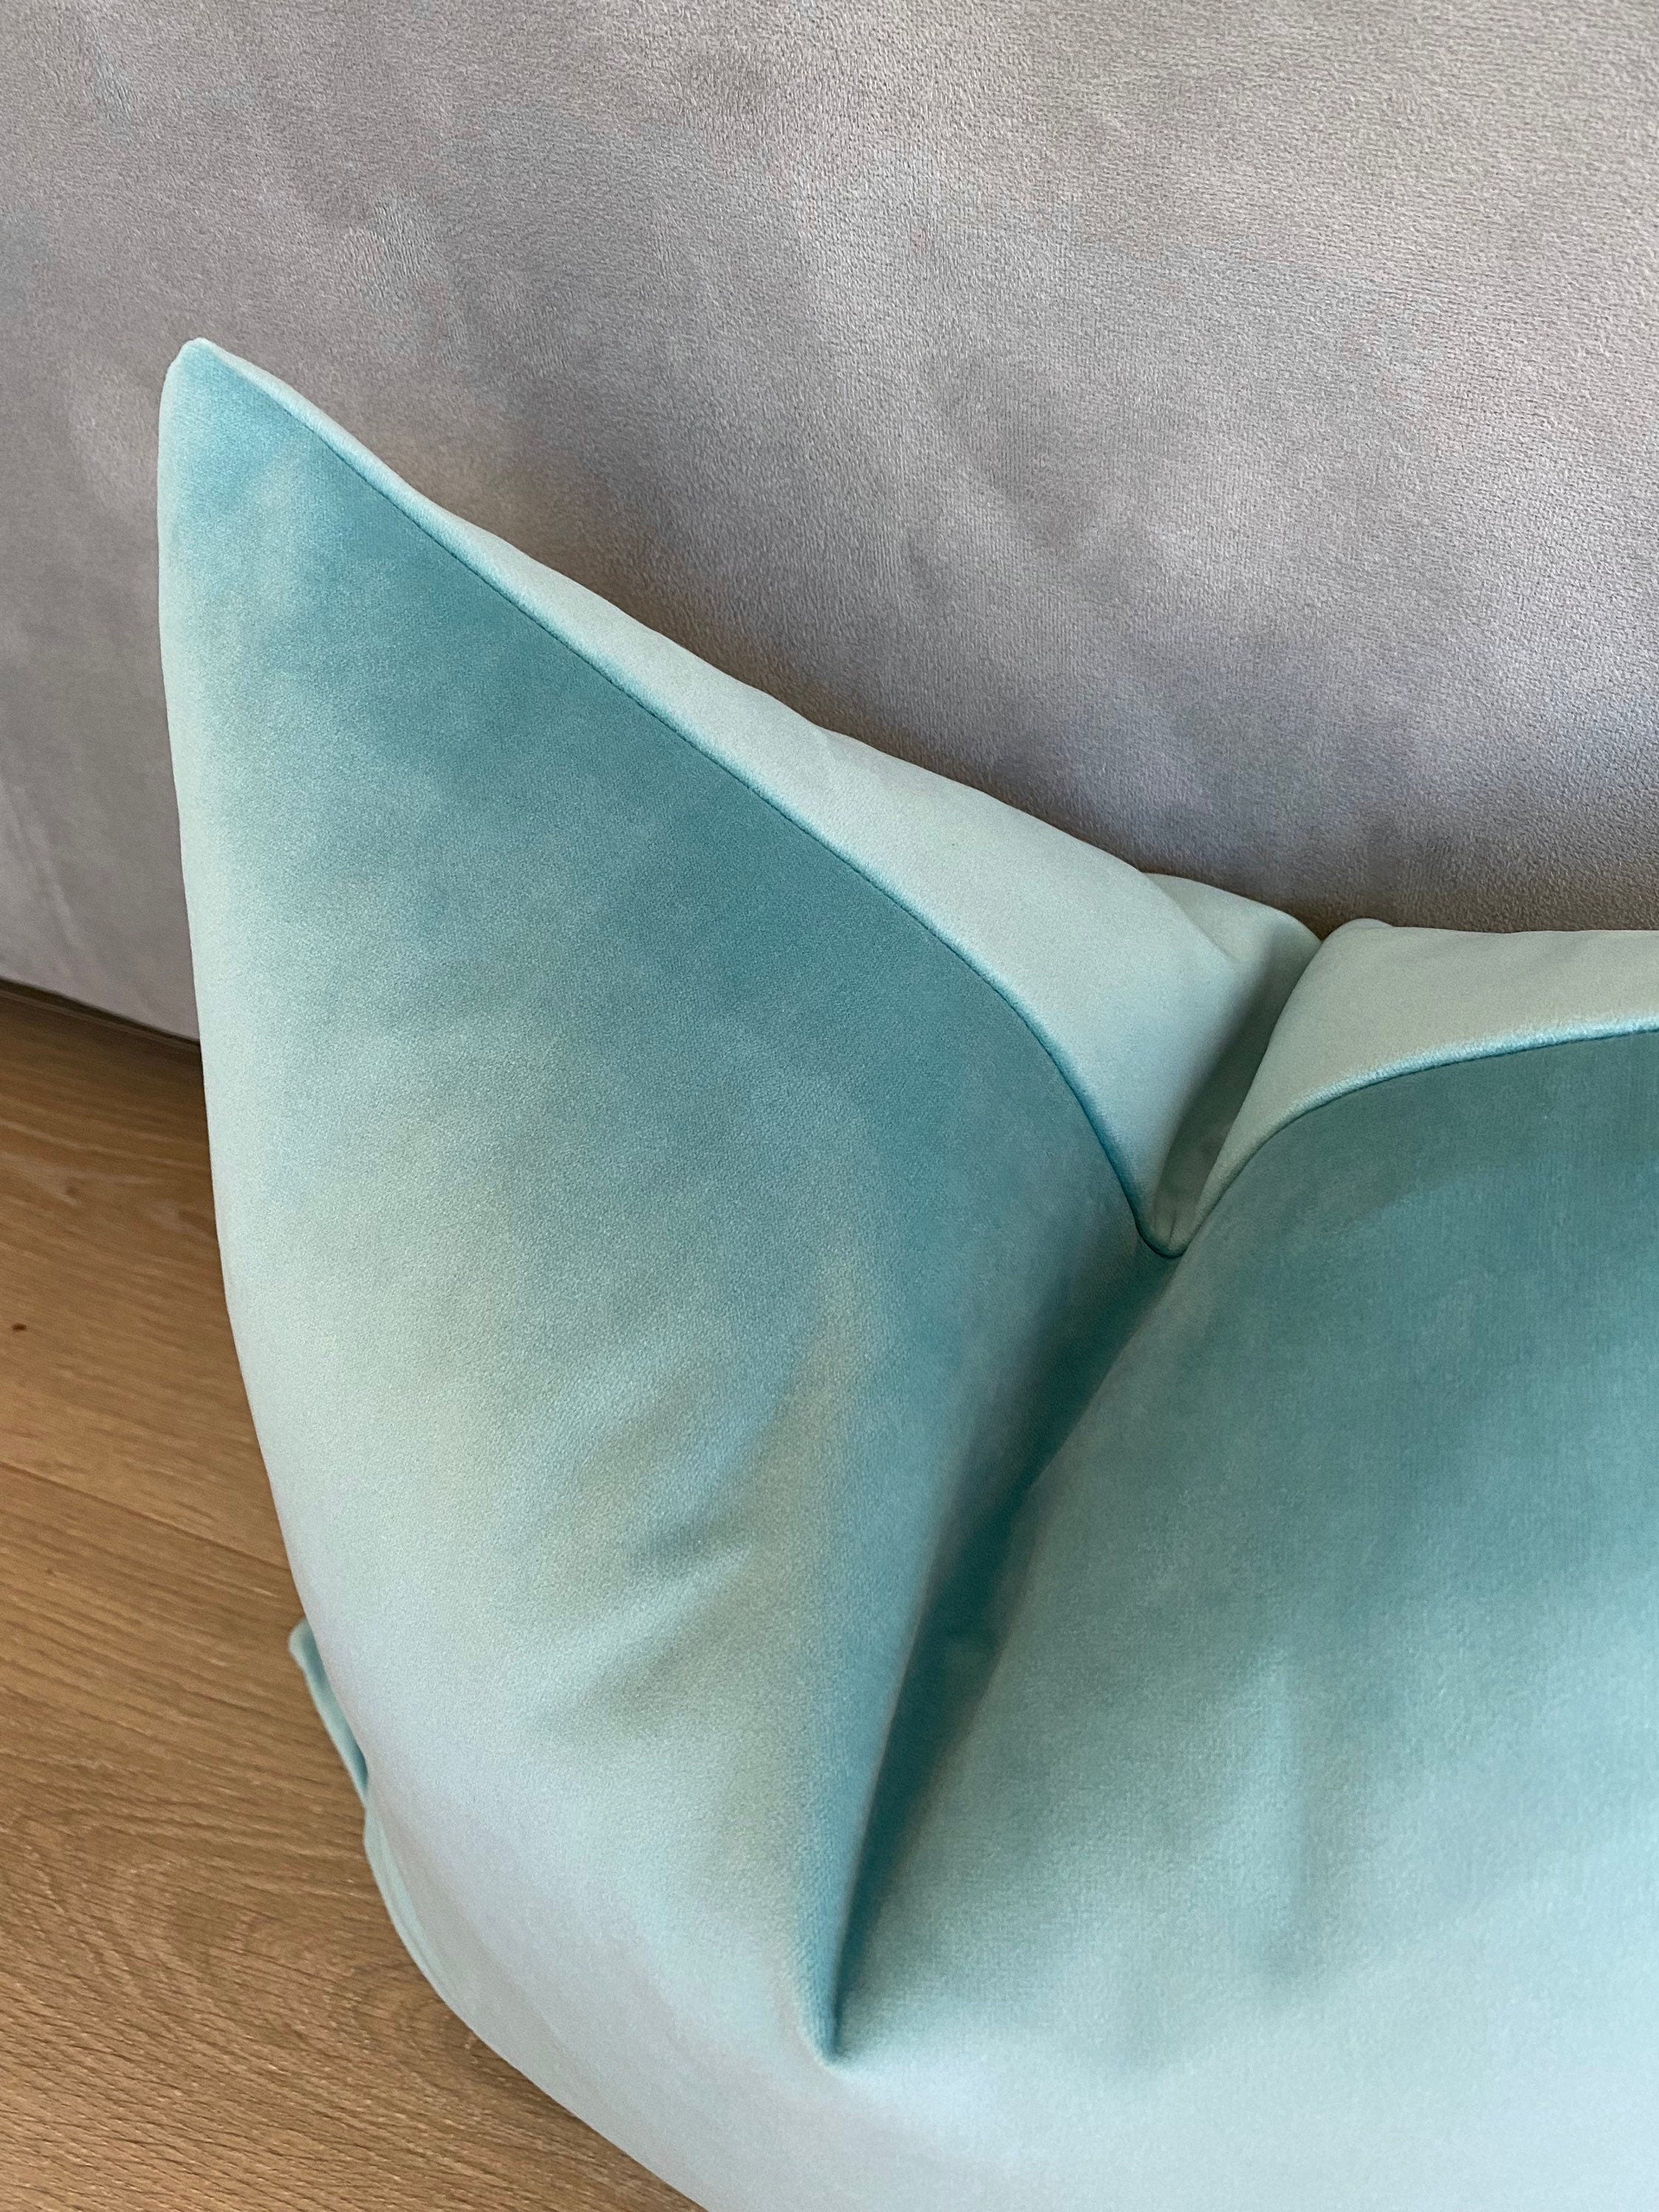 BLISS Velvet Pillow Cover - Aqua